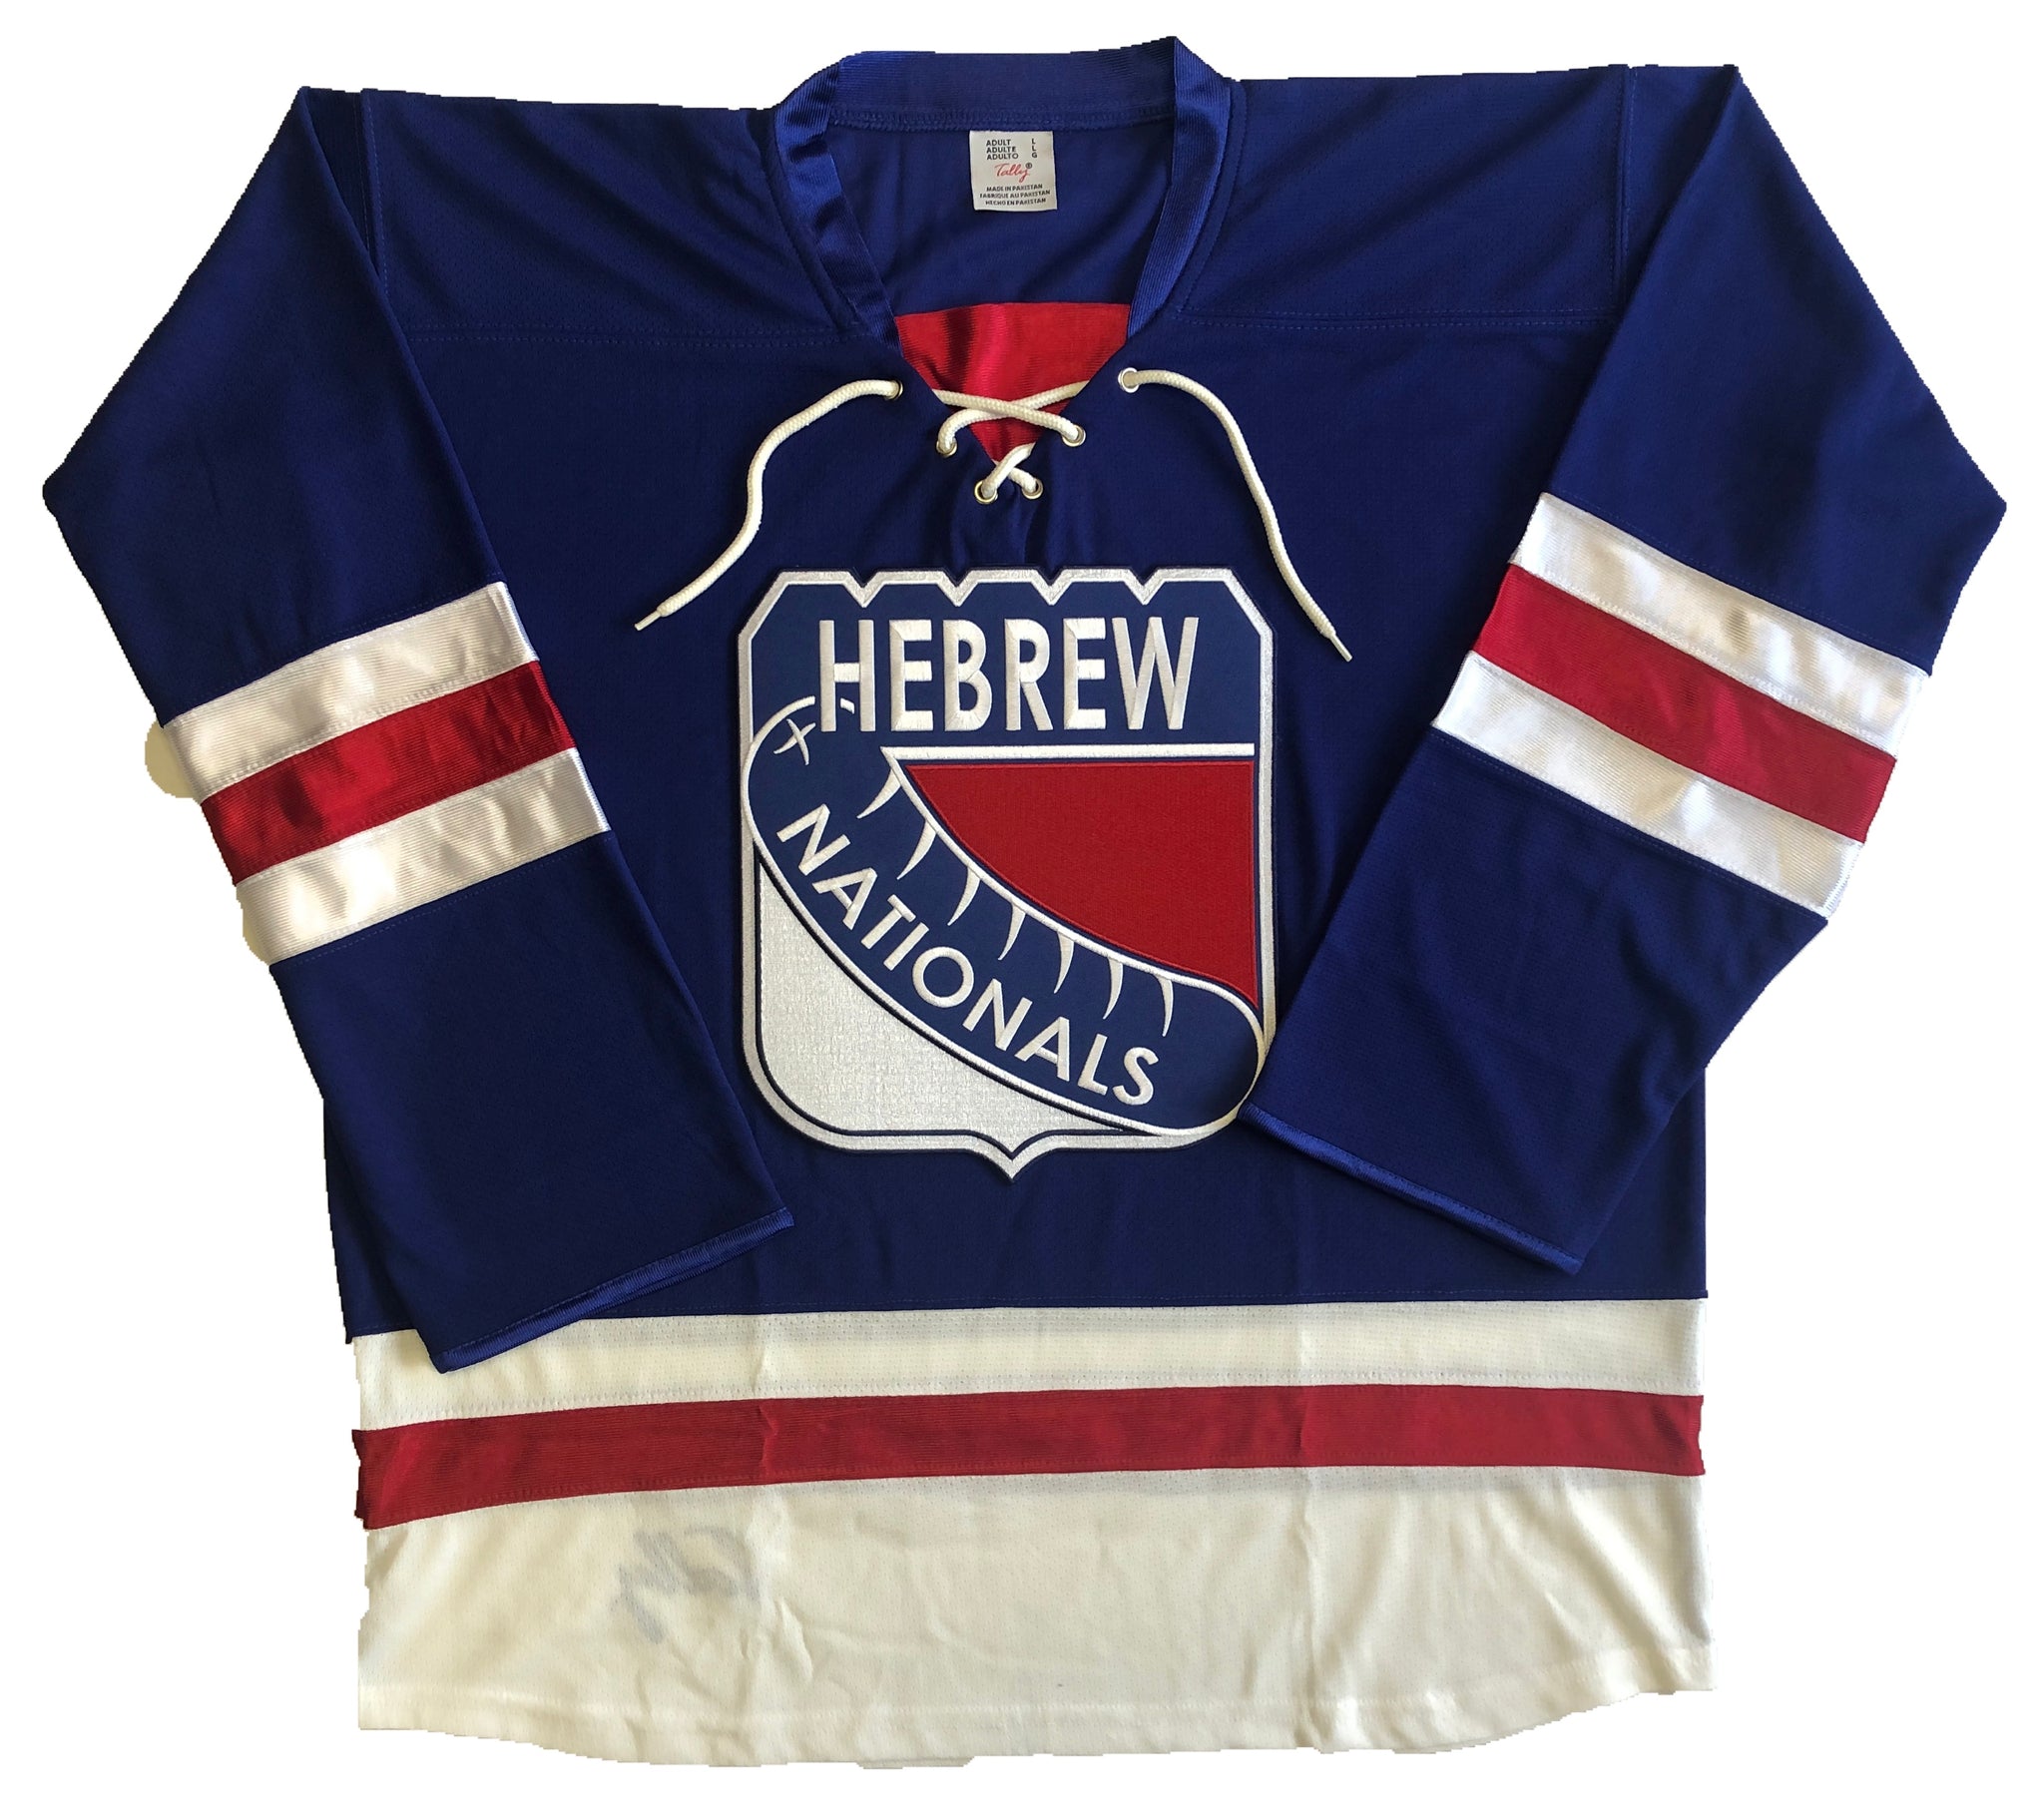 Custom Hockey Jerseys with a Blackhawk Logo and Shoulder Patches – Tally Hockey  Jerseys